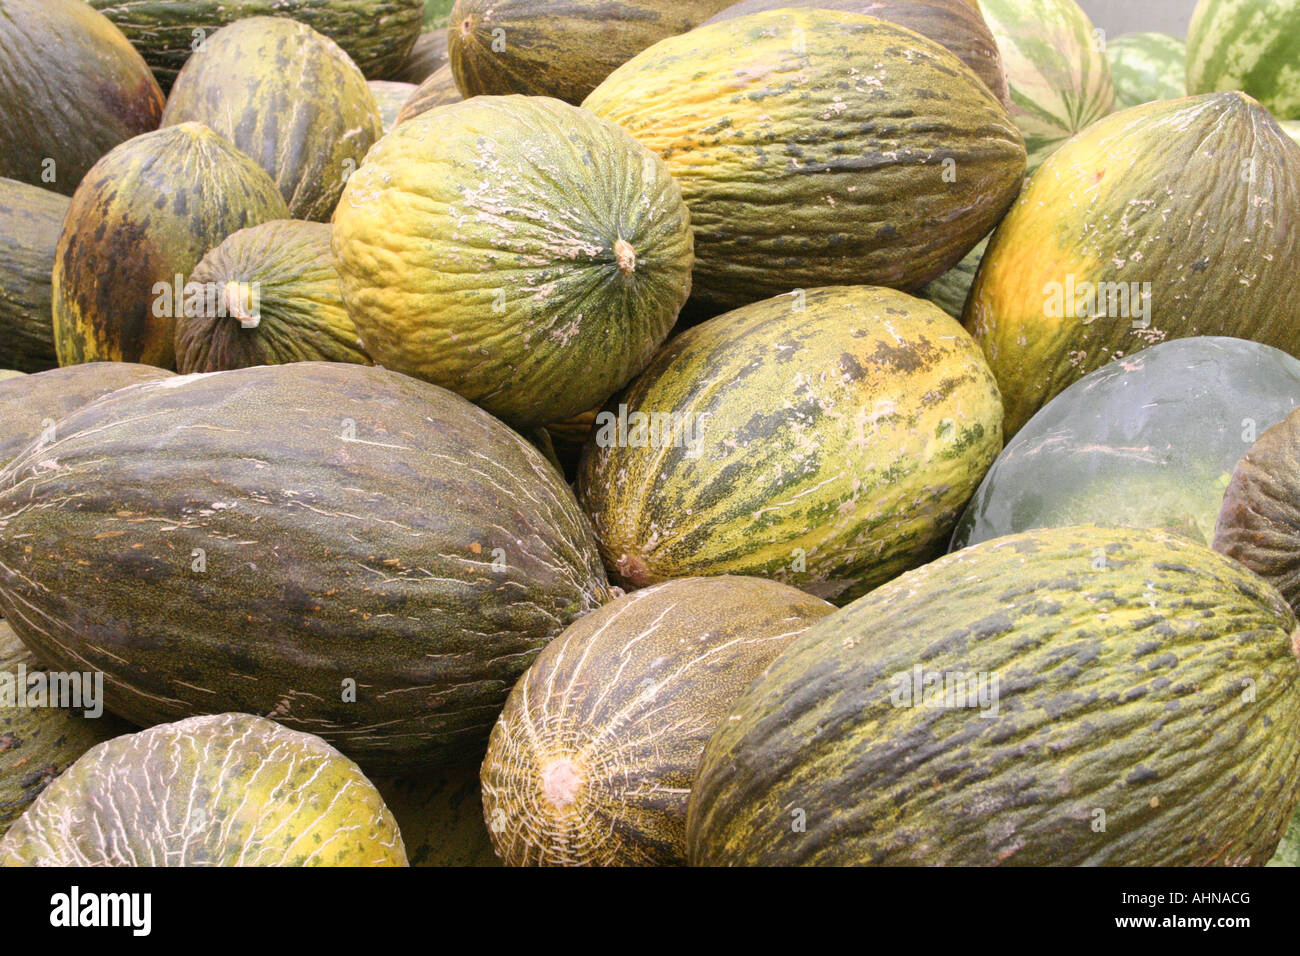 Les melons d'eau à l'arrière du camion dans Calasetta, St Antioco, Sardaigne, Italie Banque D'Images